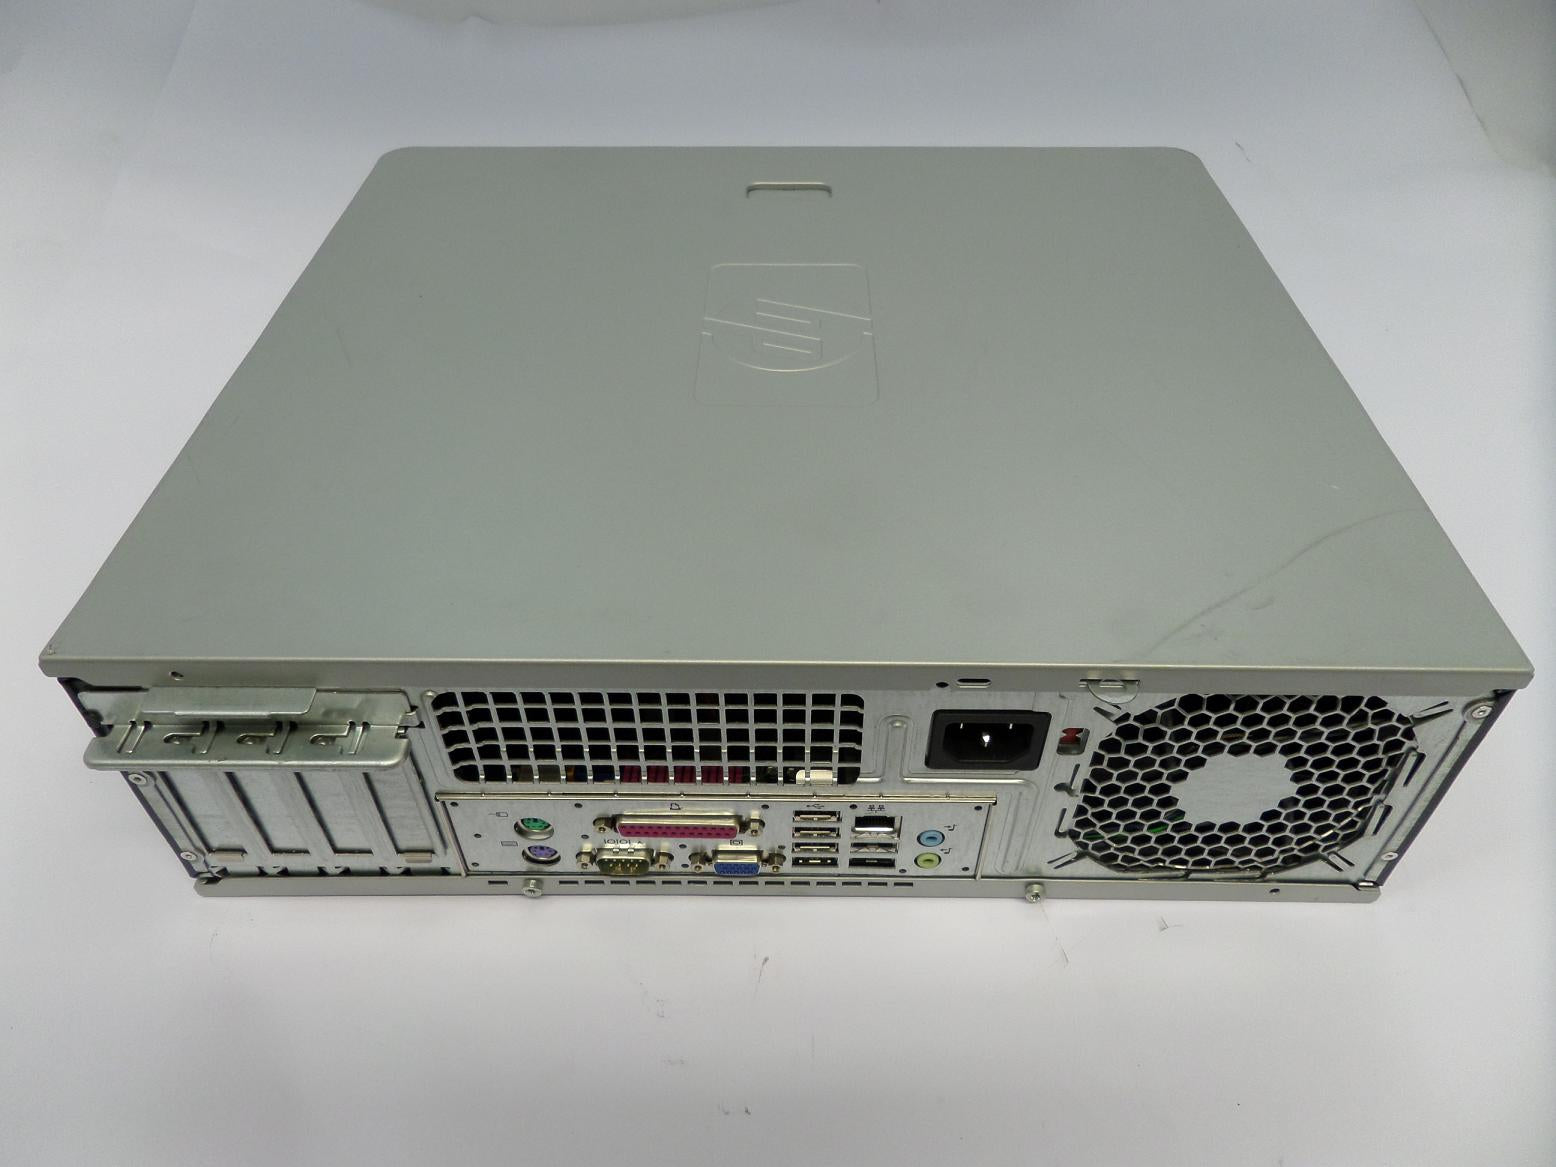 PR24860_RG882ET#ABU_HP Compaq dc5700 Core 2 Duo 1.86GHz SFF Desktop - Image2